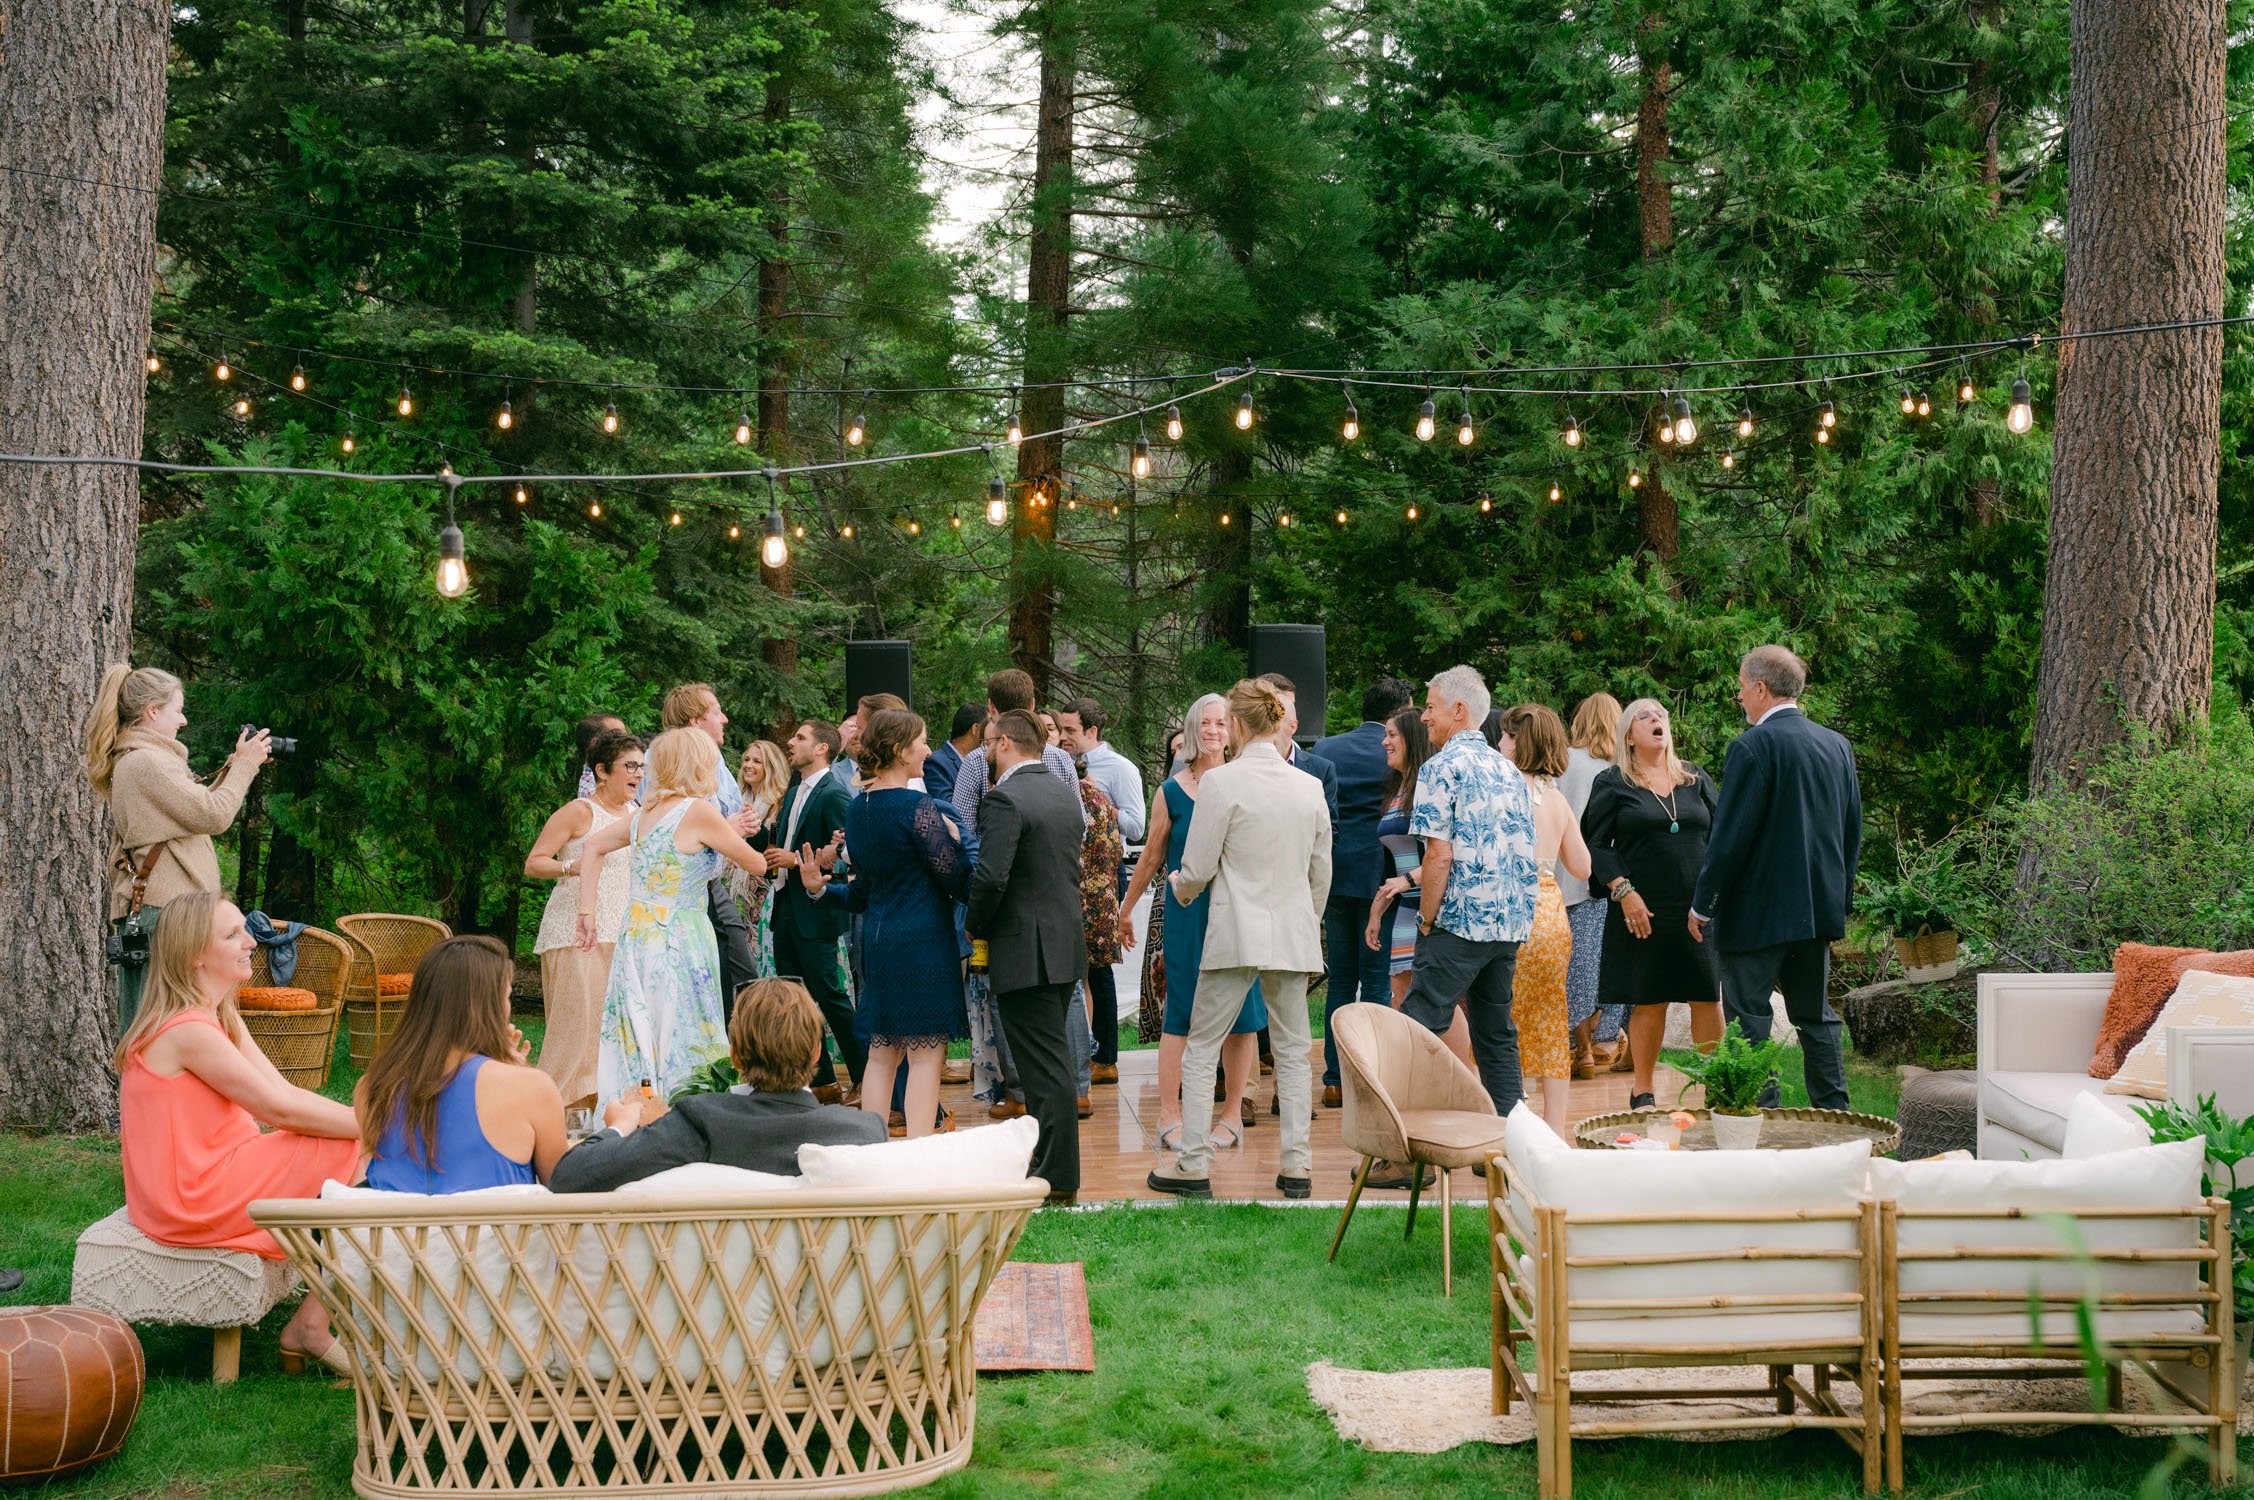 Private Estate Wedding reception photos of an outdoor dance floor